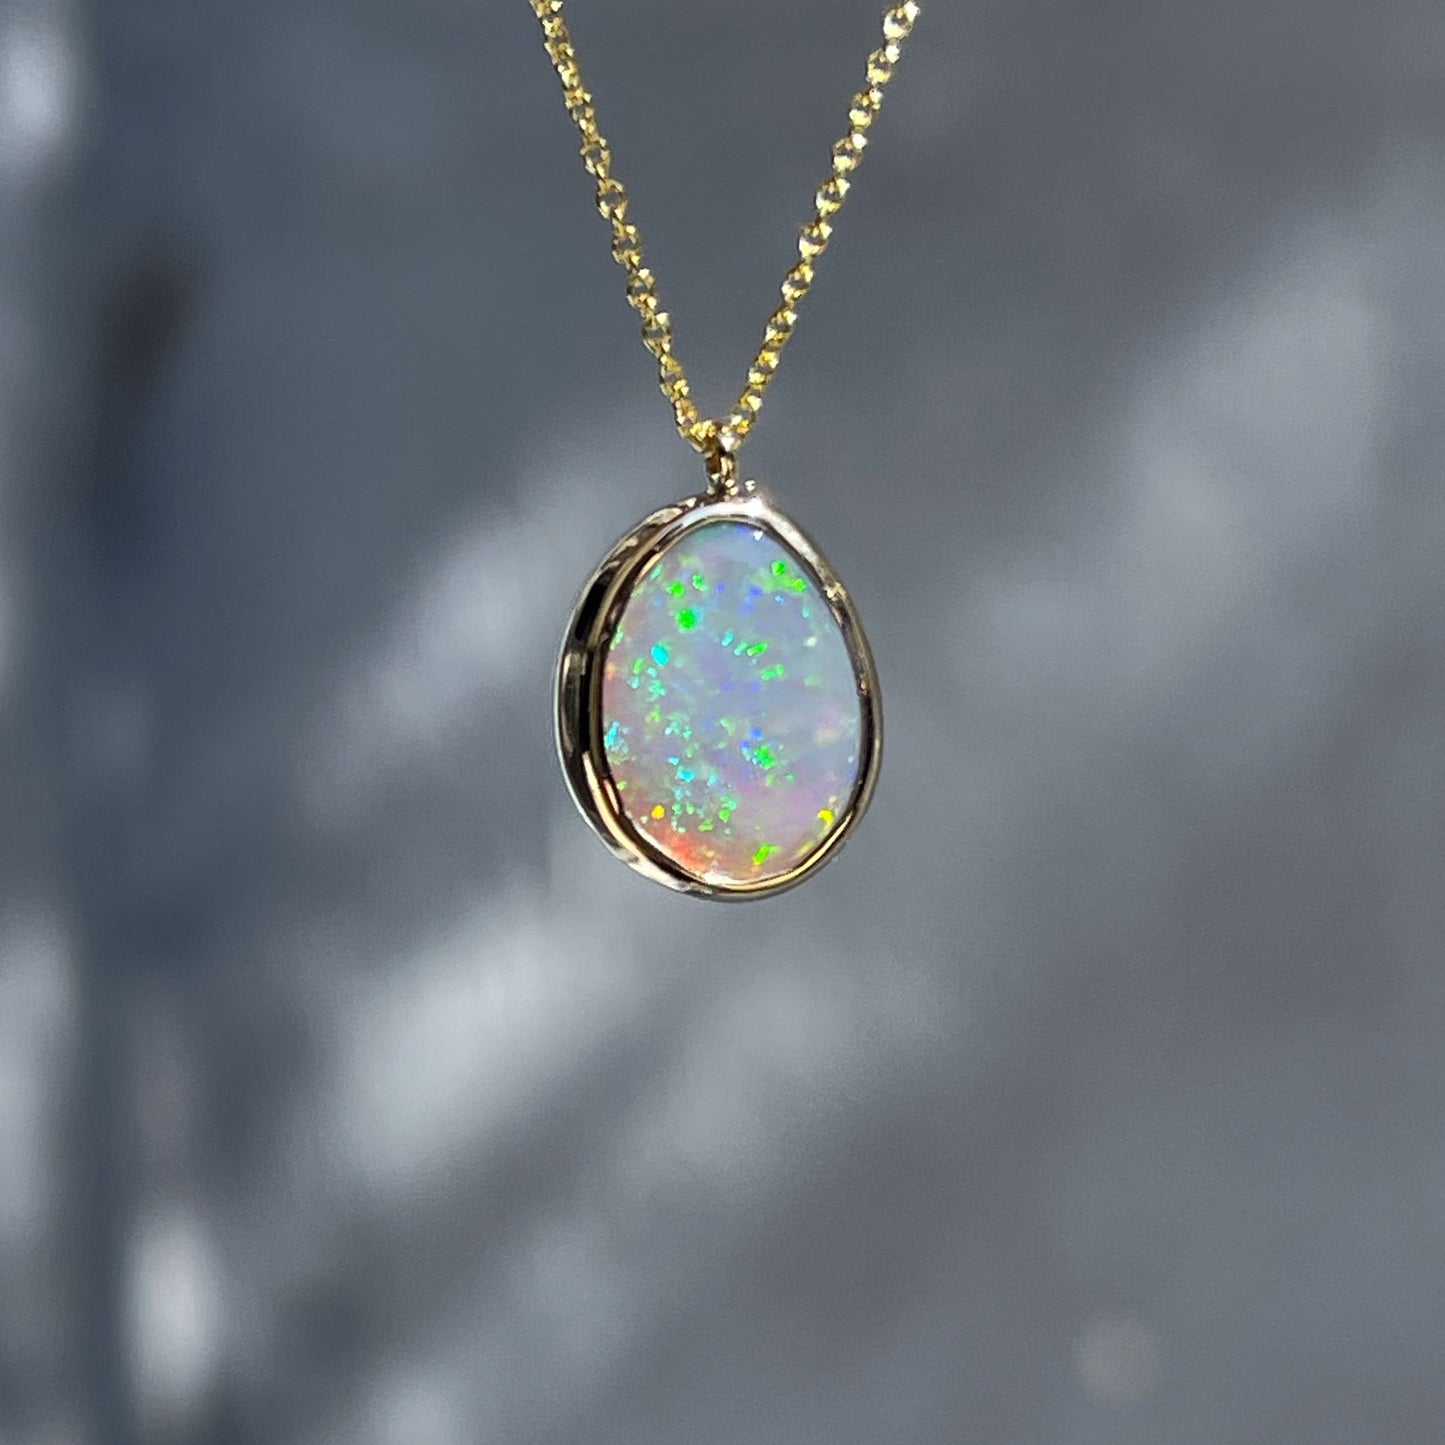 An Australian Opal Necklace by NIXIN Jewelry with a Lightning Ridge Black Opal in a bezel setting.